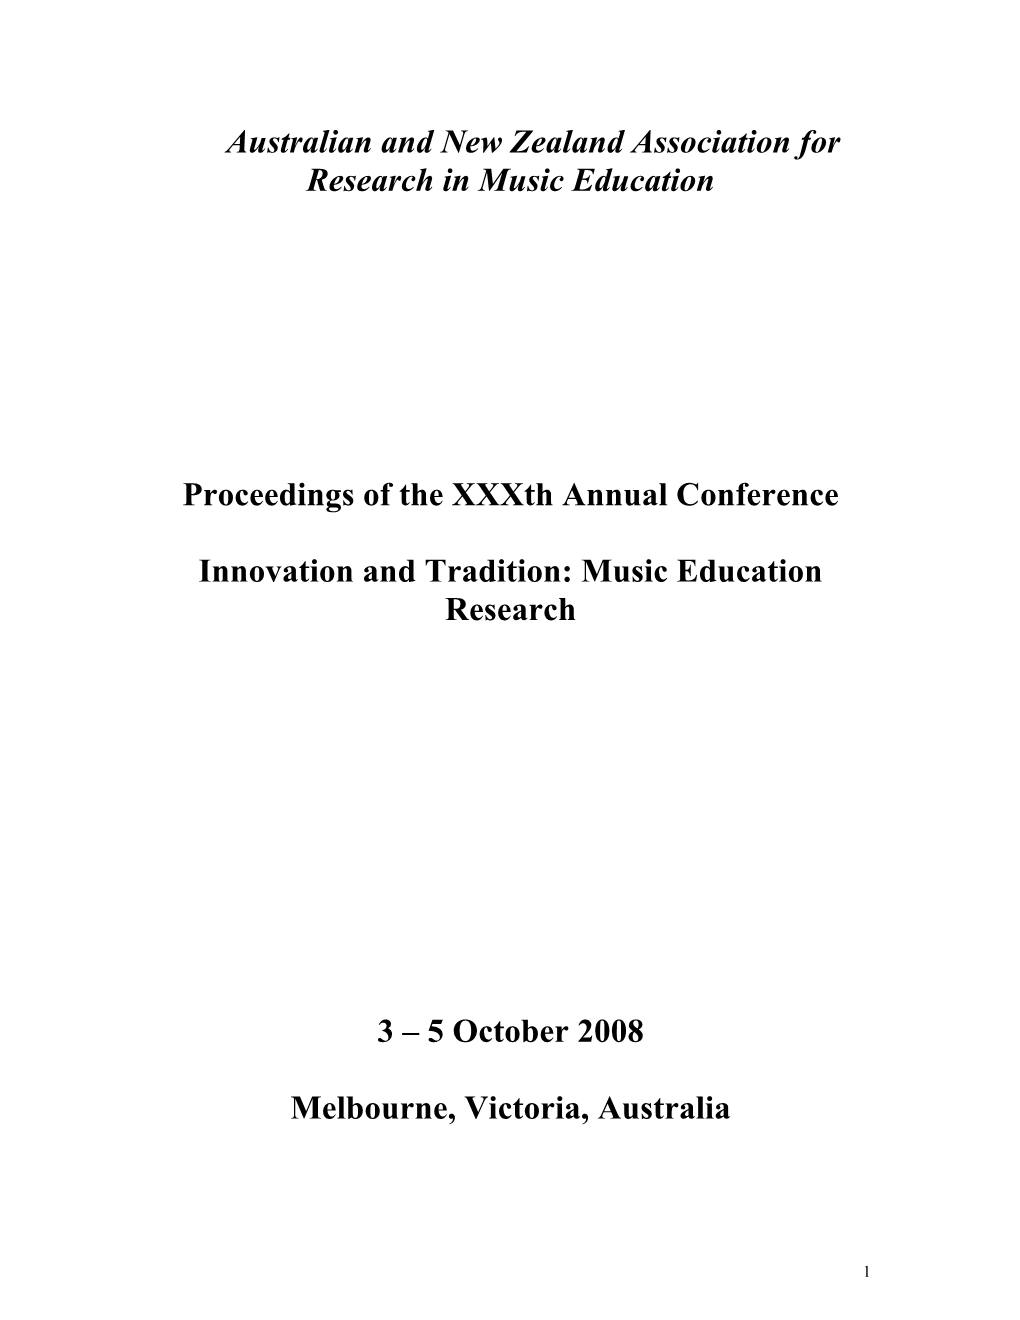 2008 ANZARME Conference Proceedings